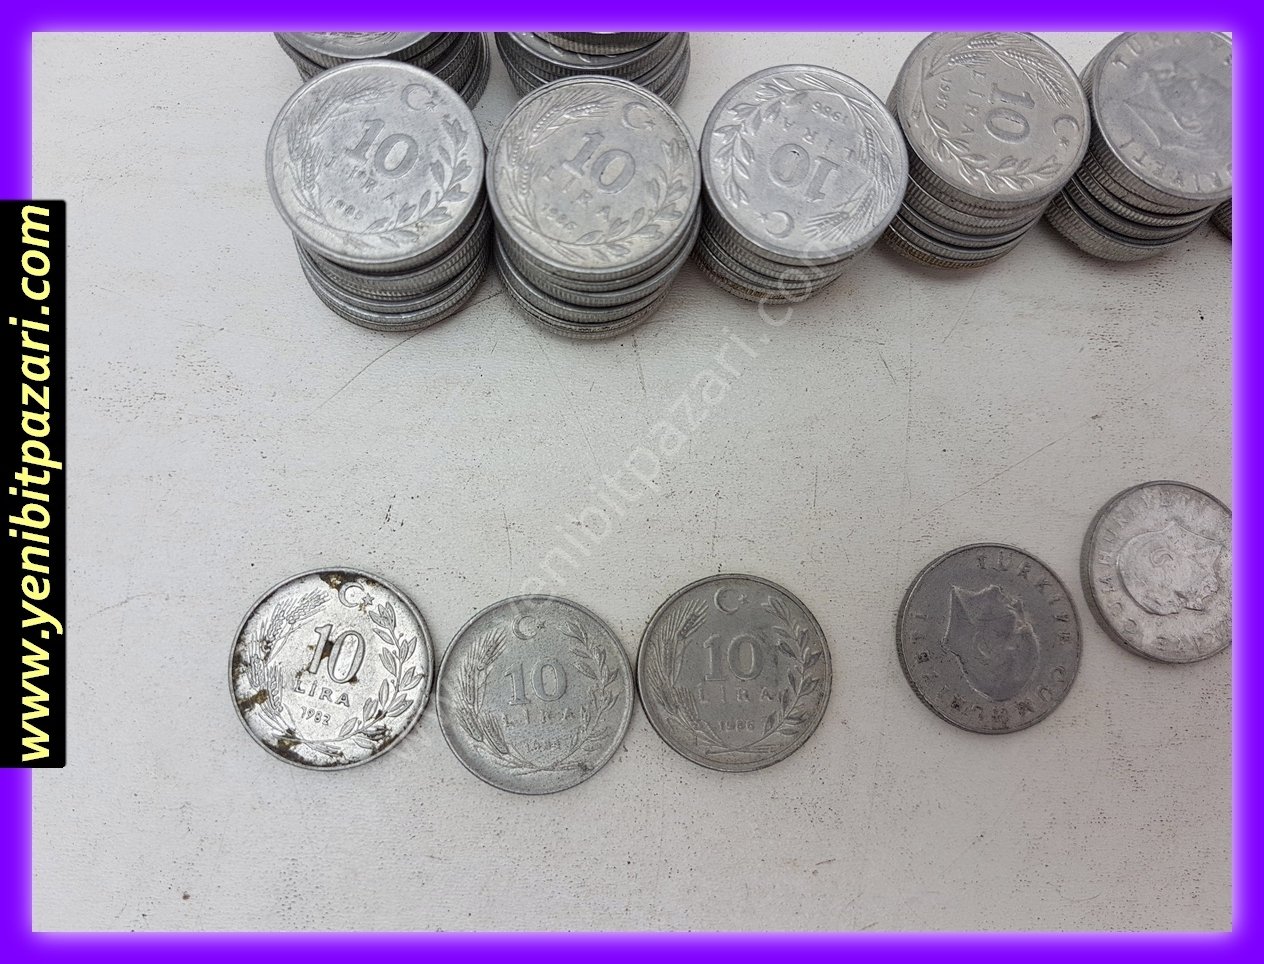 10 on türk lirası tl lira 1982  1984 1985 1986 orjinal antika tarihi eski para çeşitleri metal madeni paralar kolesksiyonluk nostalji bozuk para